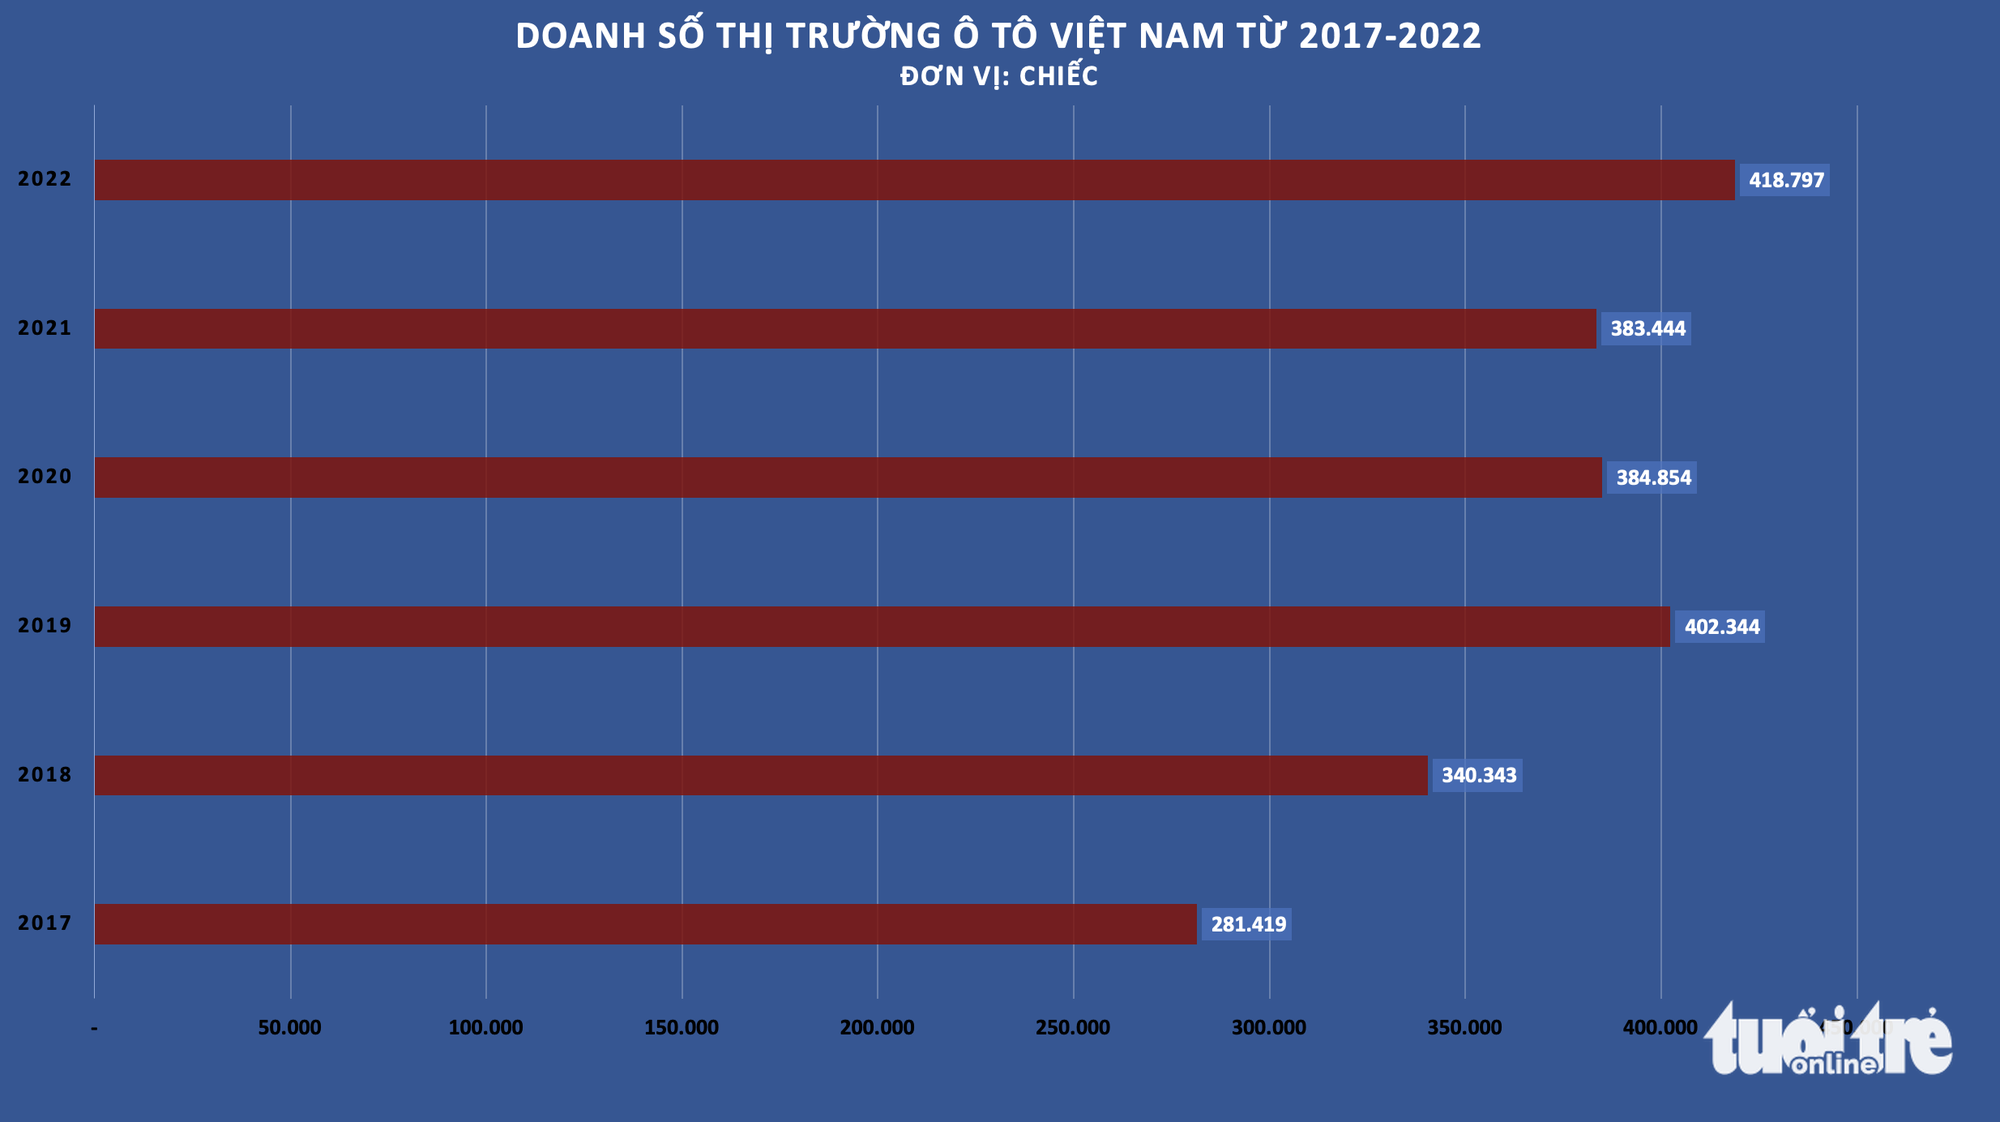 6 điểm nhấn của thị trường ô tô Việt năm 2022: Doanh số bùng nổ và nhiều điều chưa từng có - Ảnh 2.